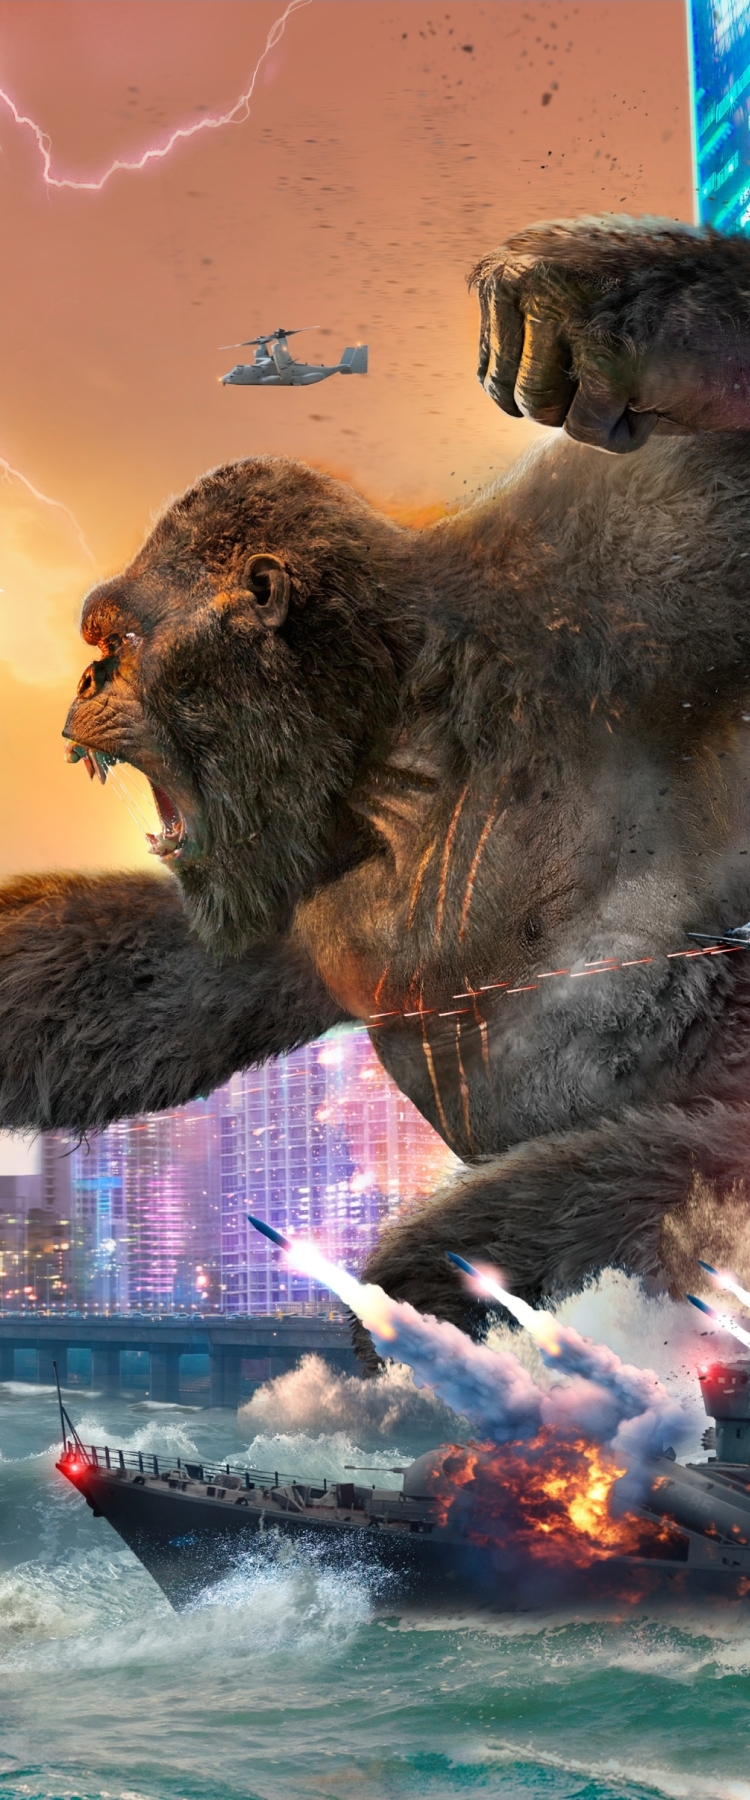 750x1800 Godzilla vs Kong 4k Fight 750x1800 Resolution Wallpaper, HD ...